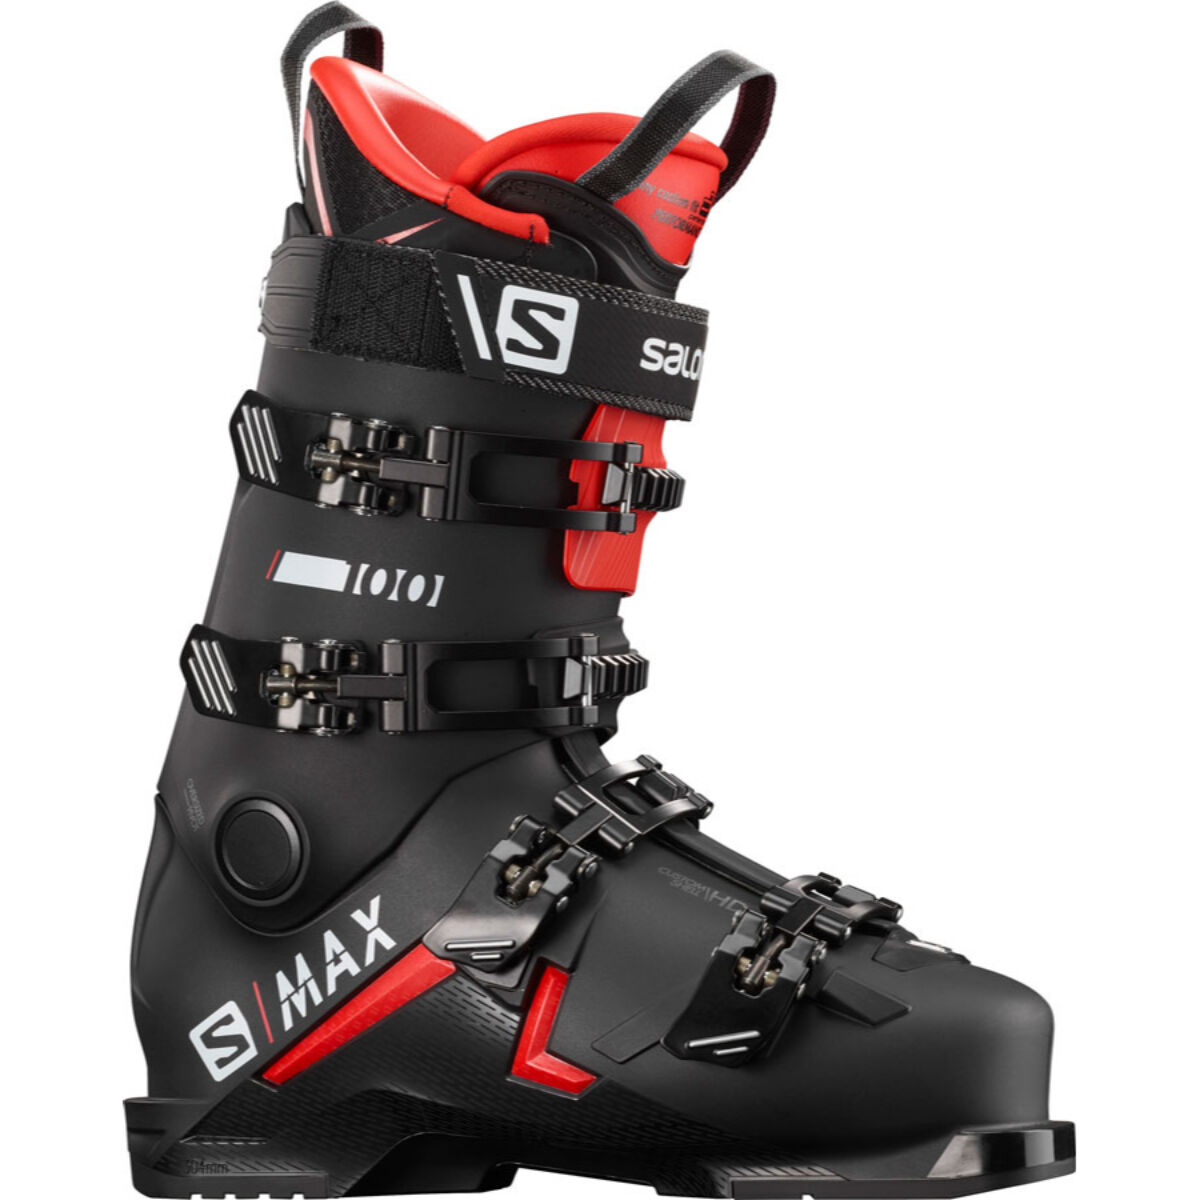 31.5 ski boots